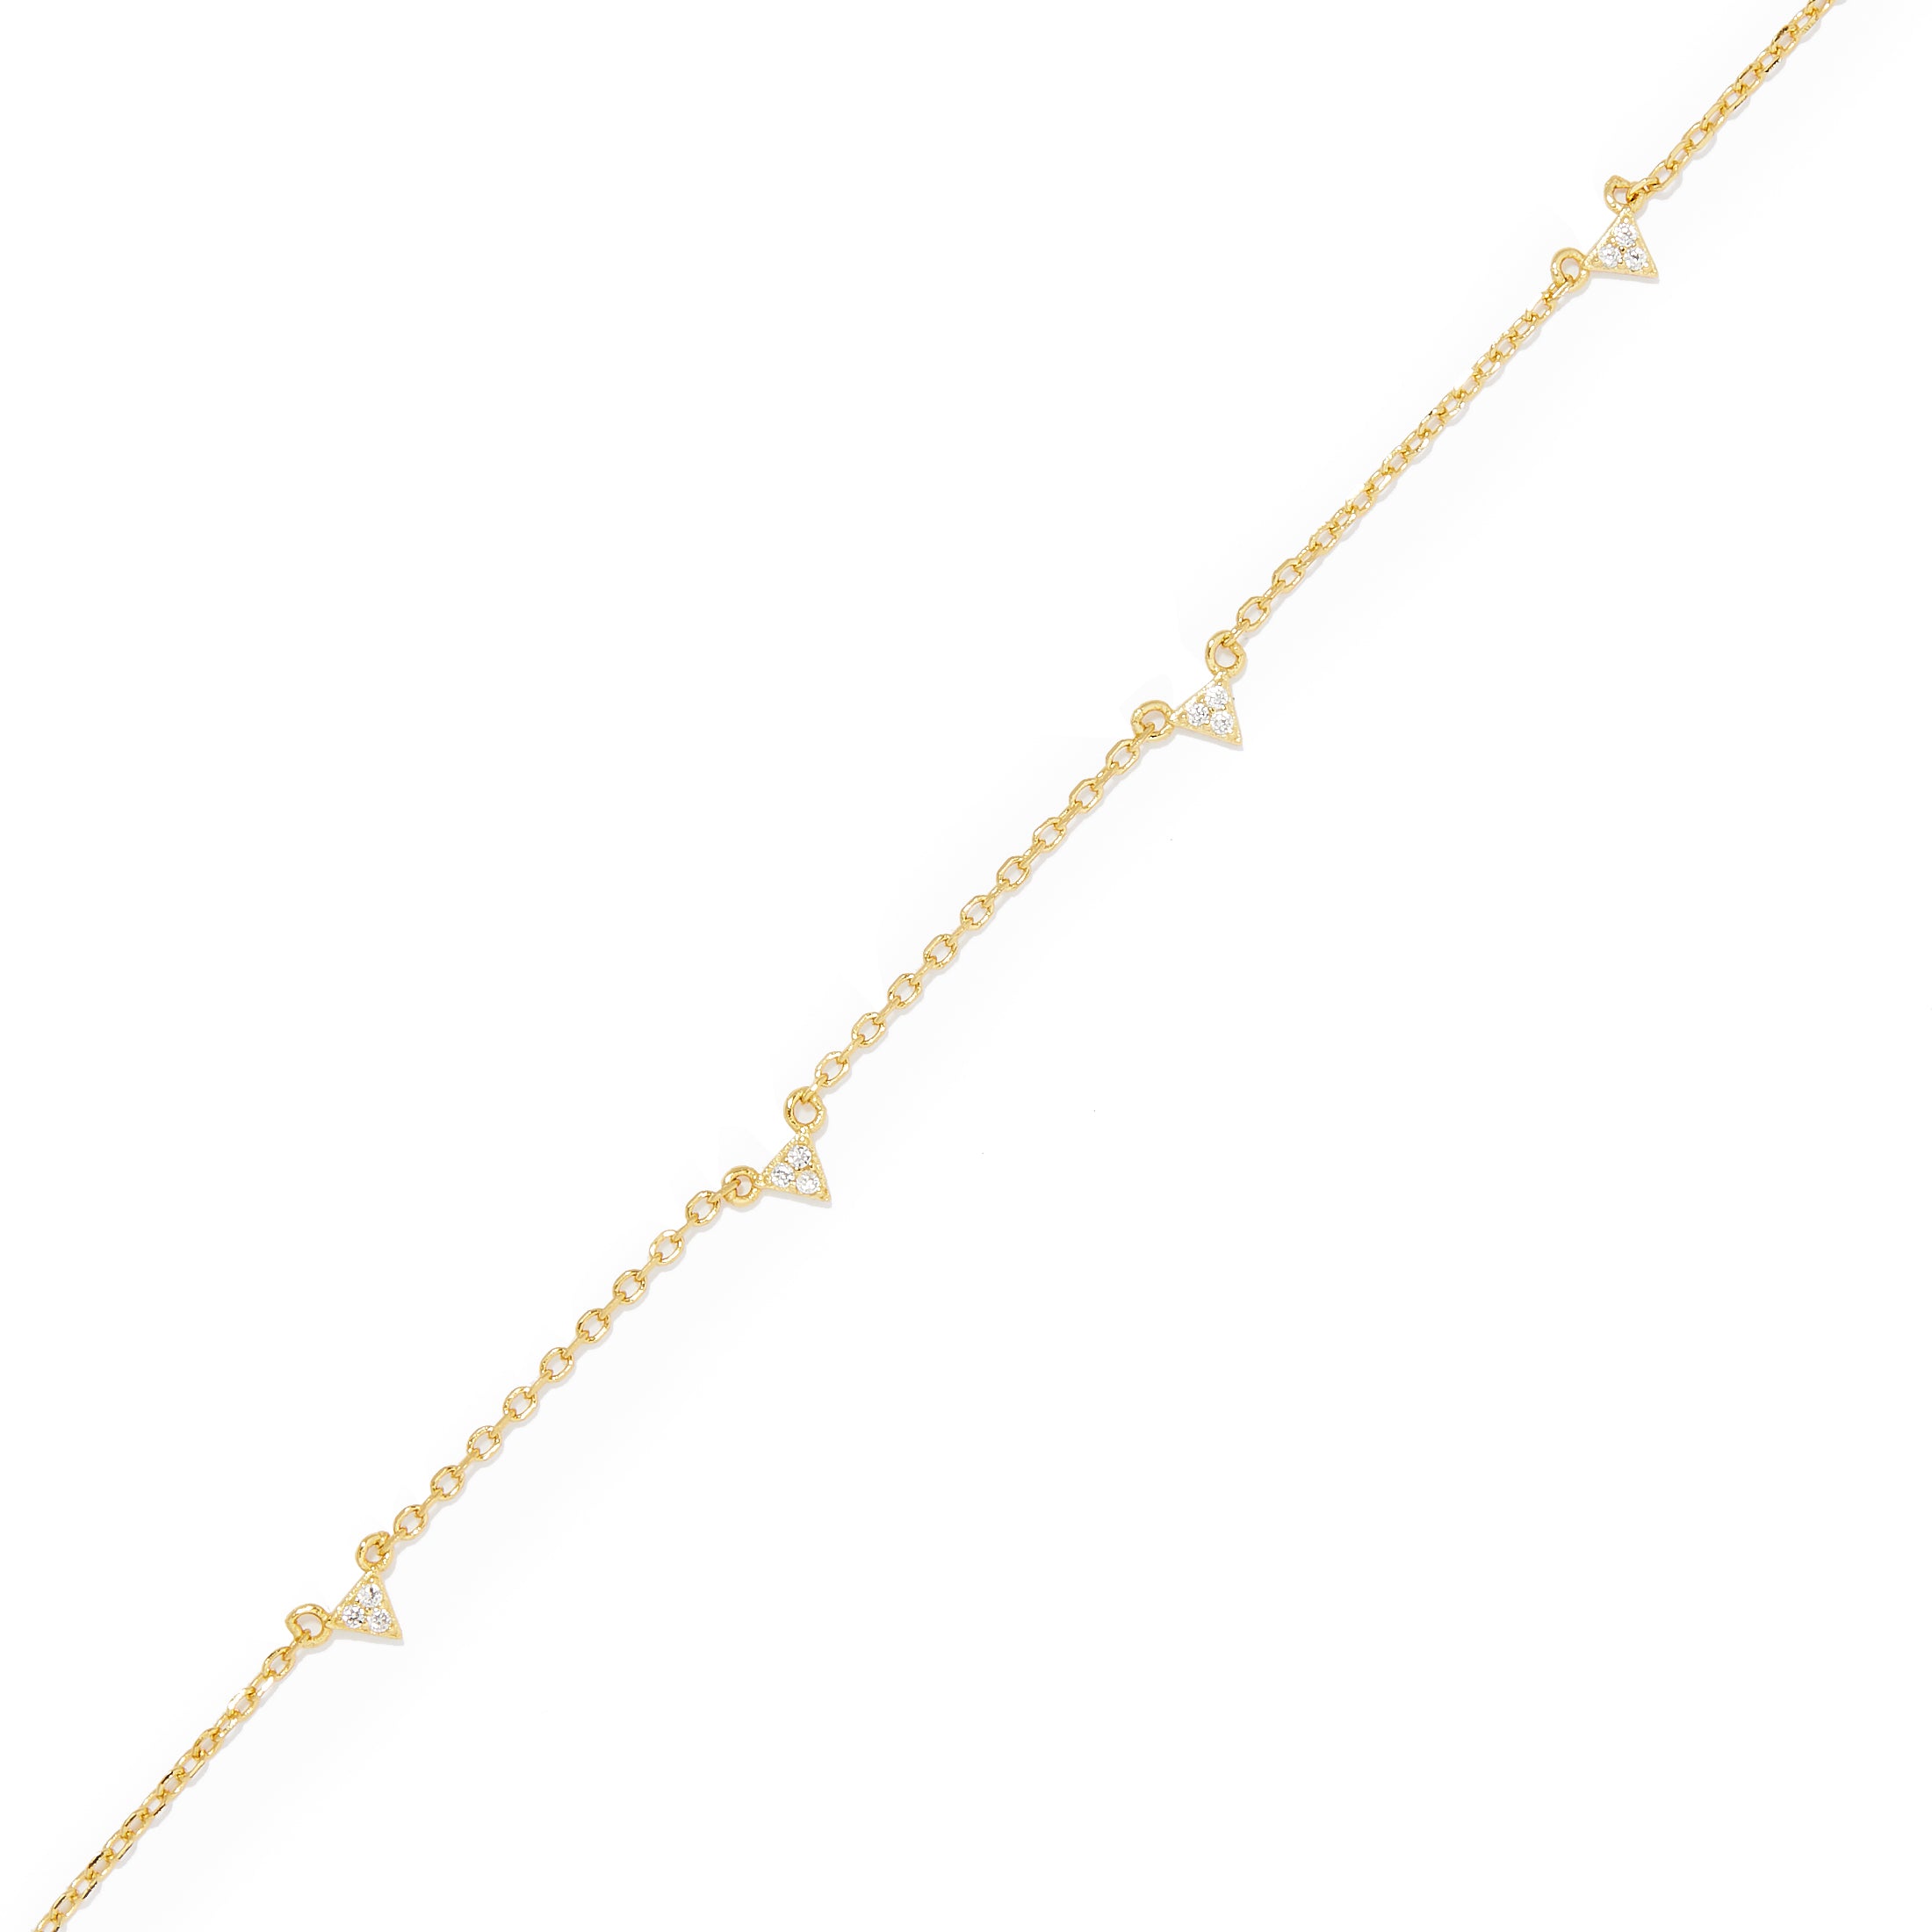 Gold Ankle Bracelet | Ankle Chain Bracelet | La Maya